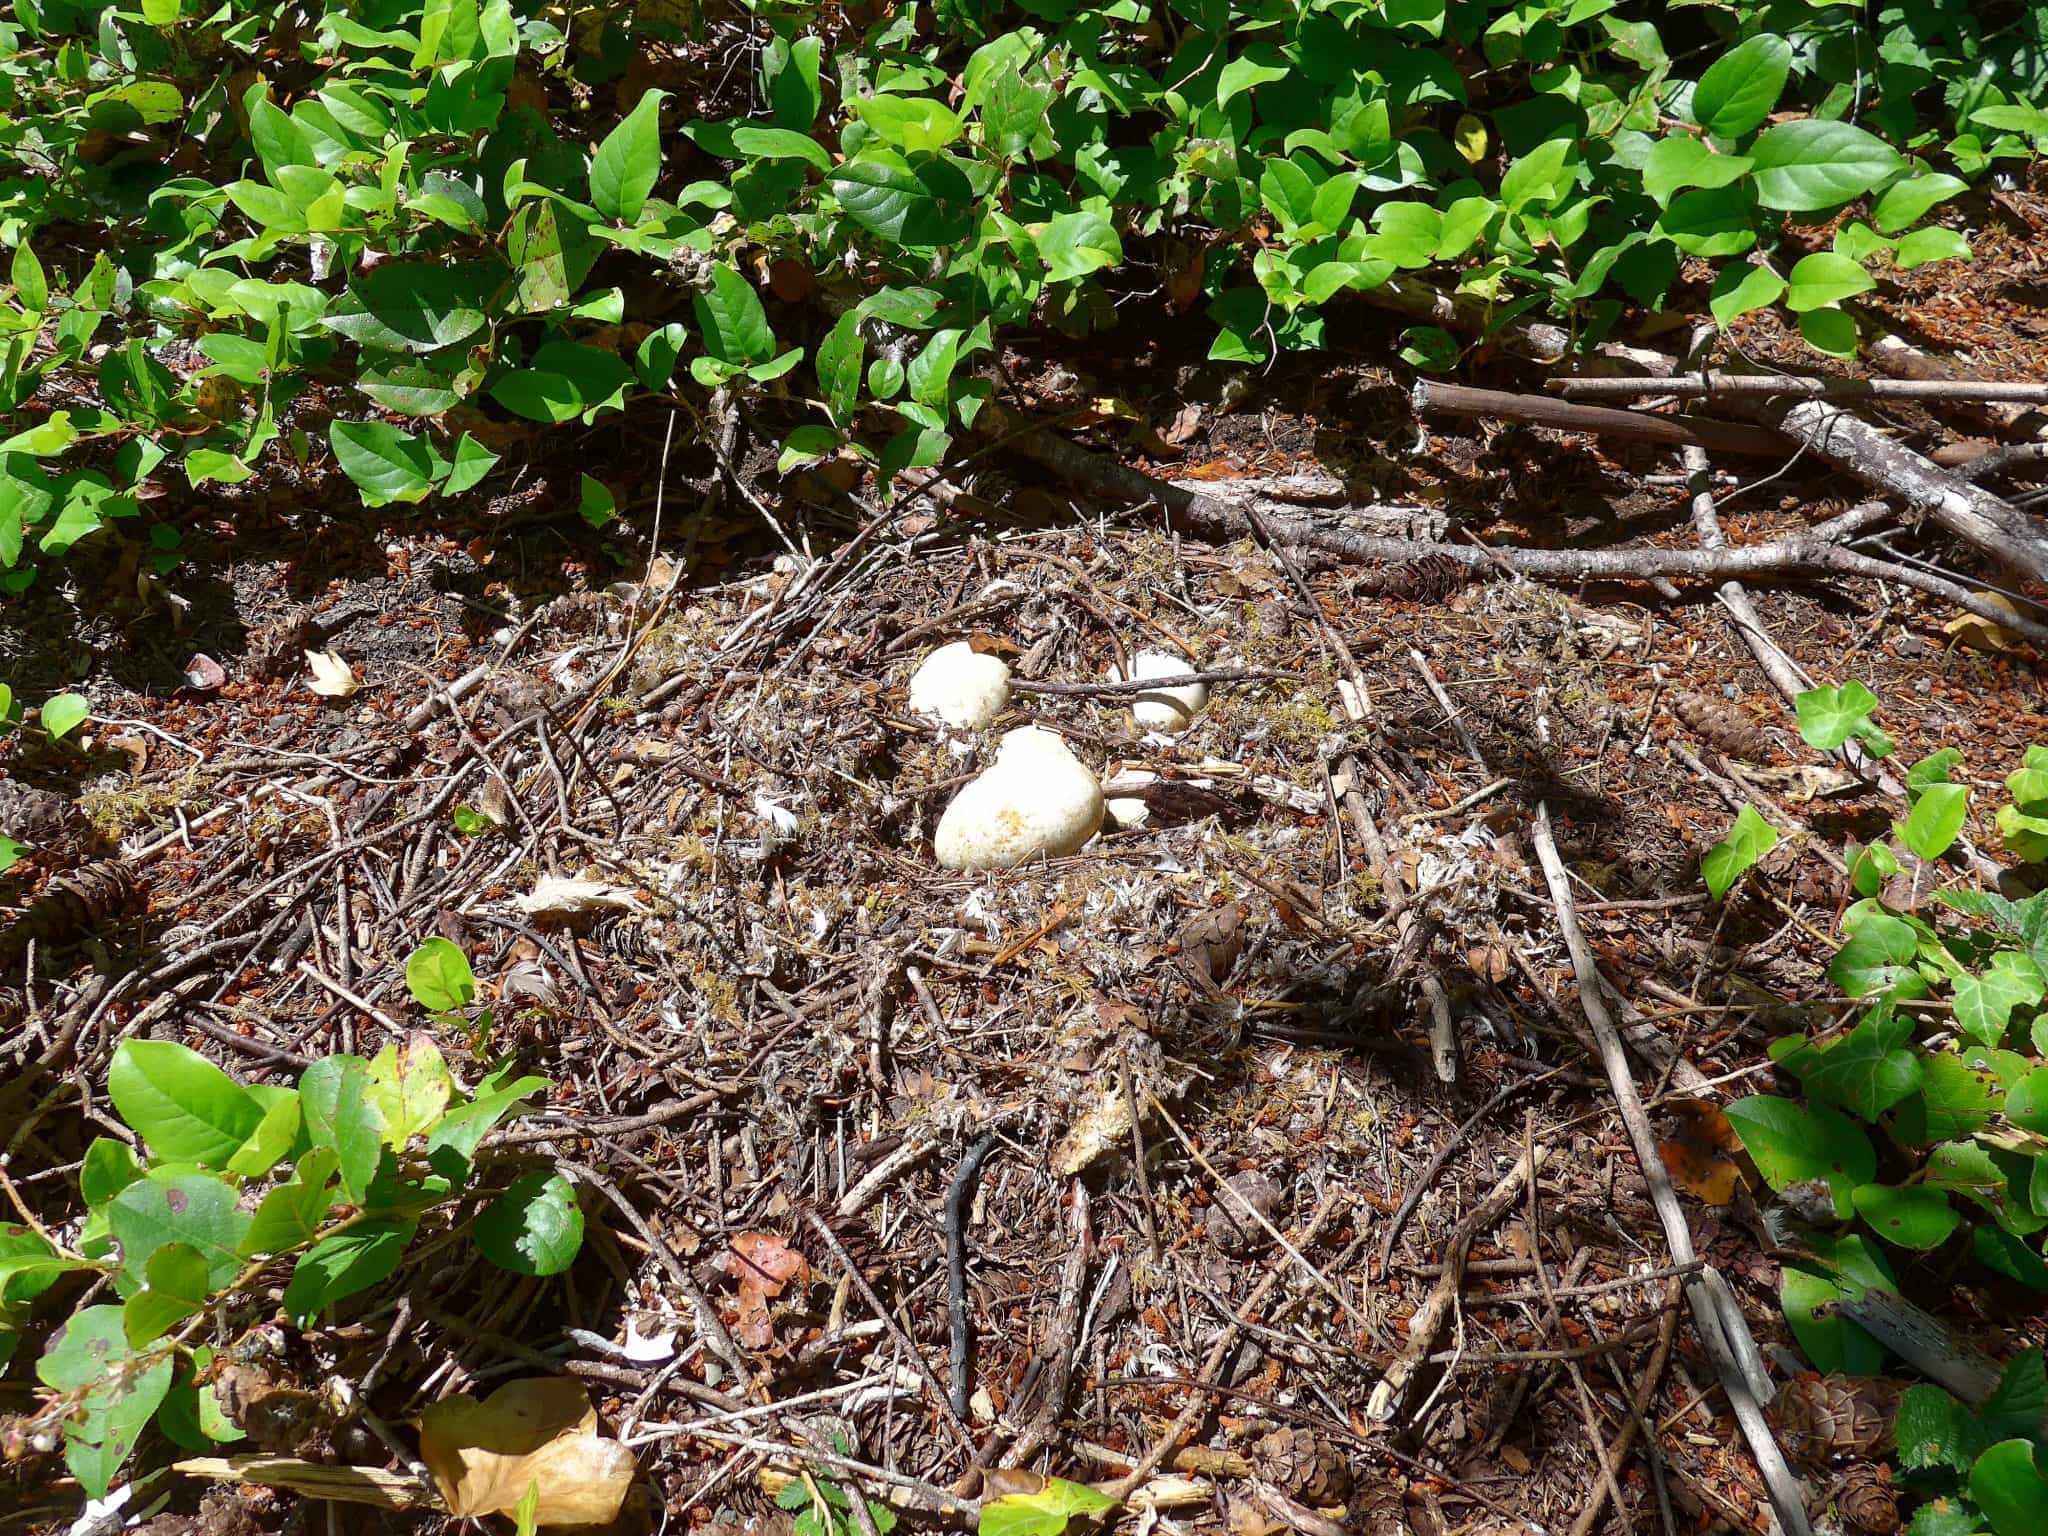 Eggs on Eagle Island